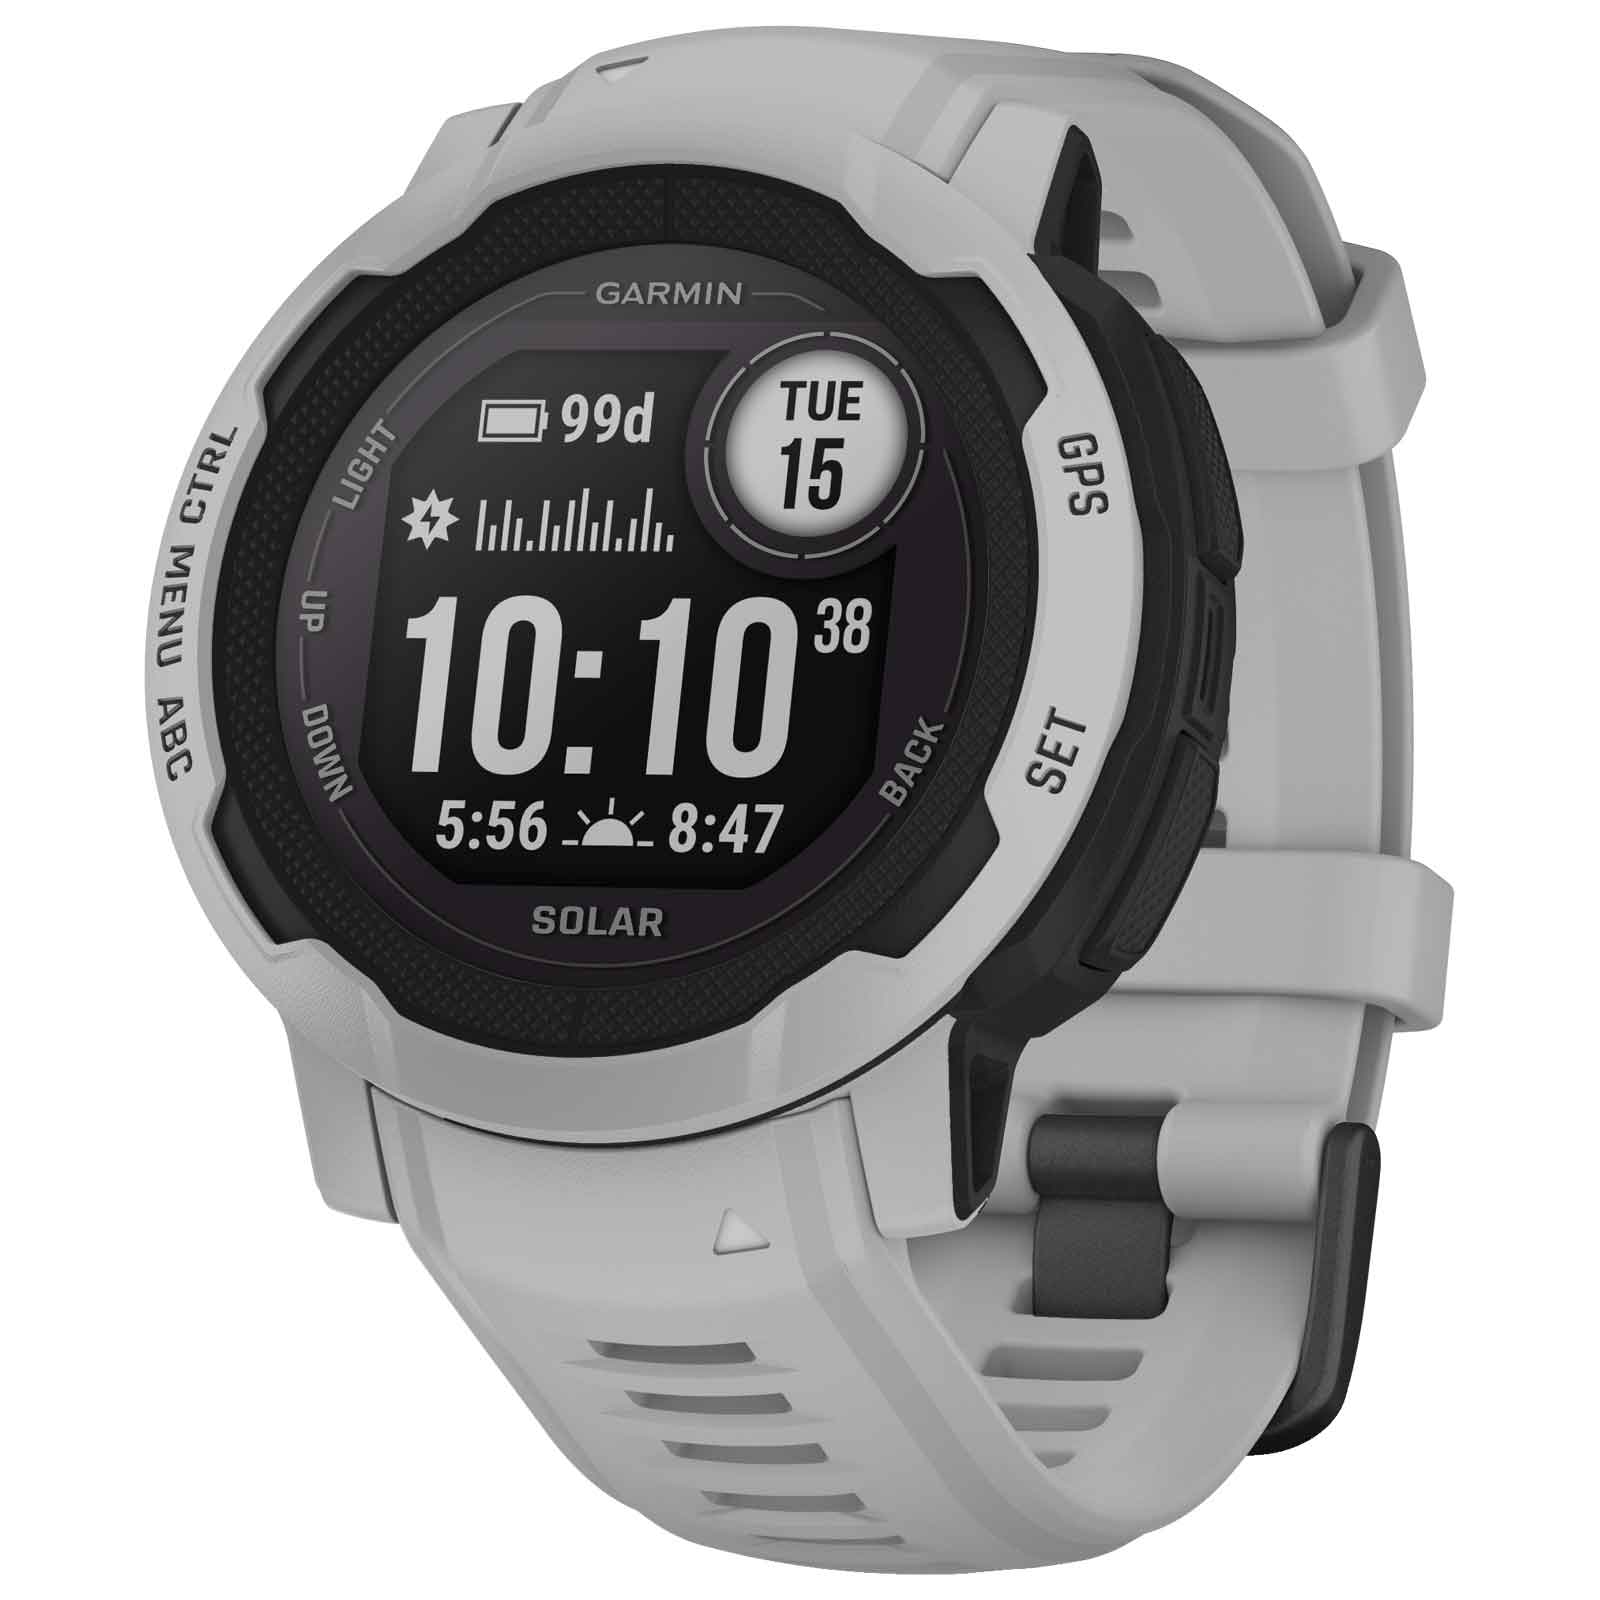 Produktbild von Garmin Instinct 2 Solar GPS Smartwatch Standard Edition - grau